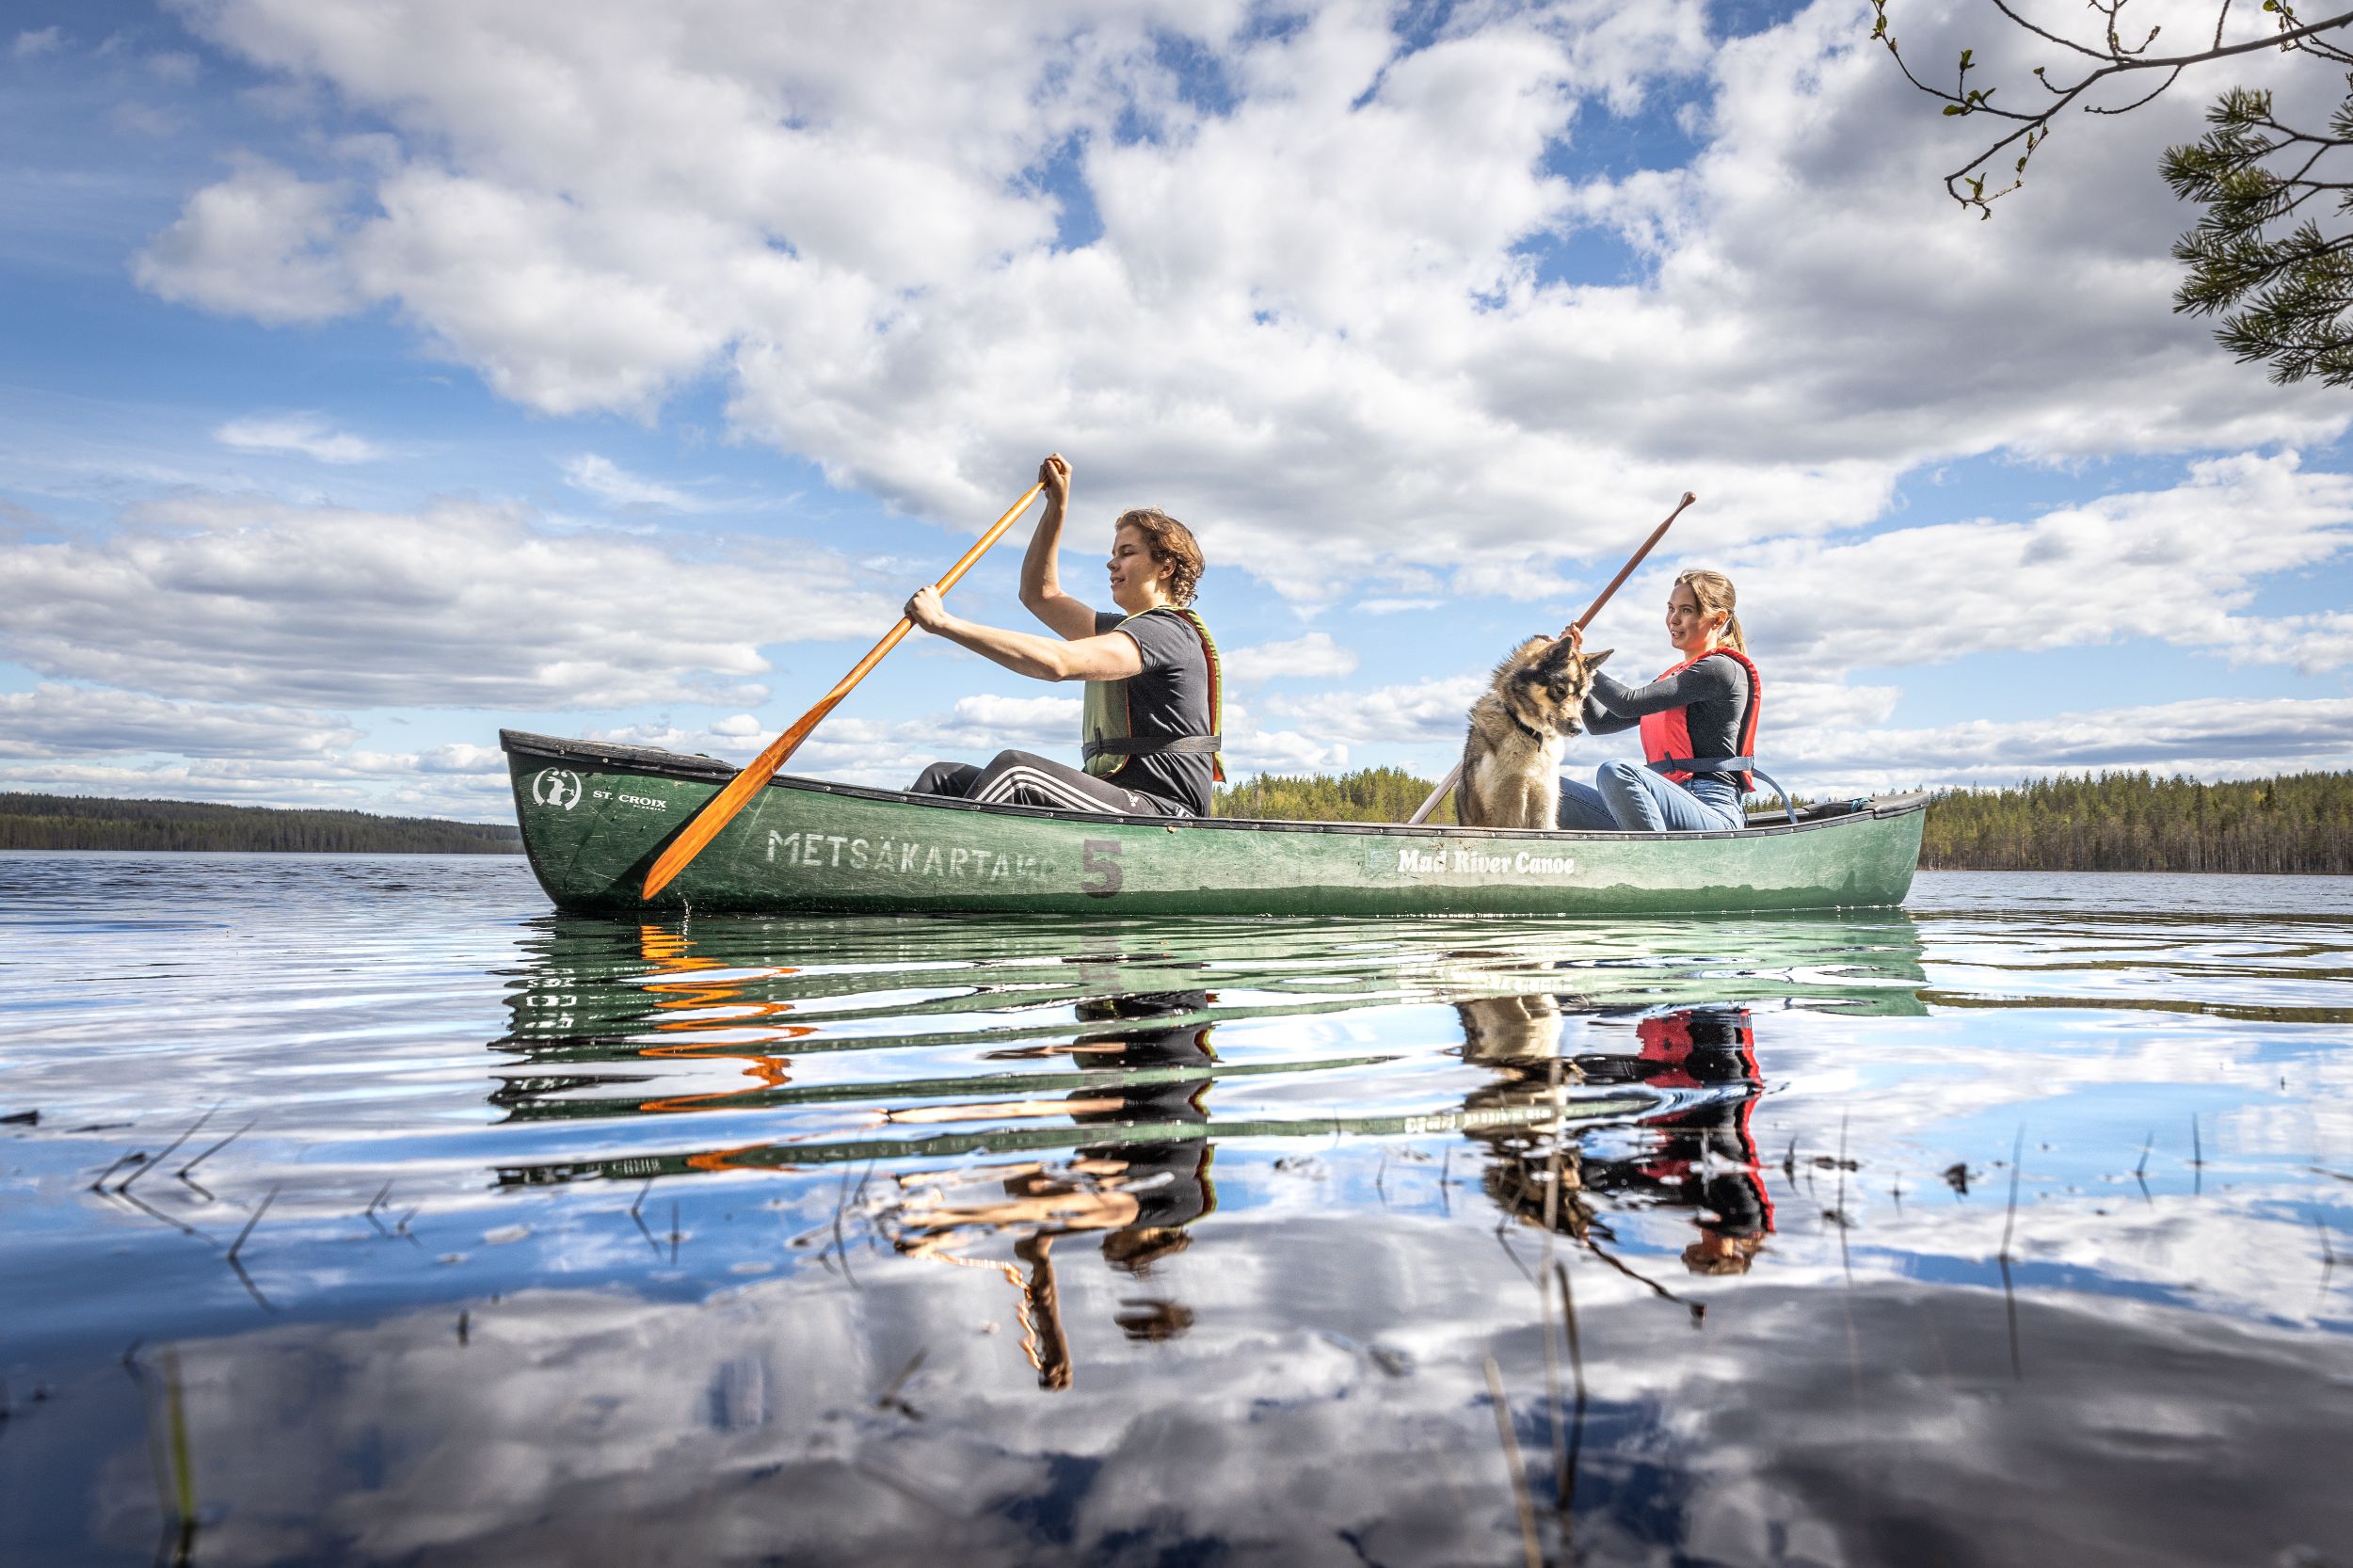 Metsäkartano canoeing